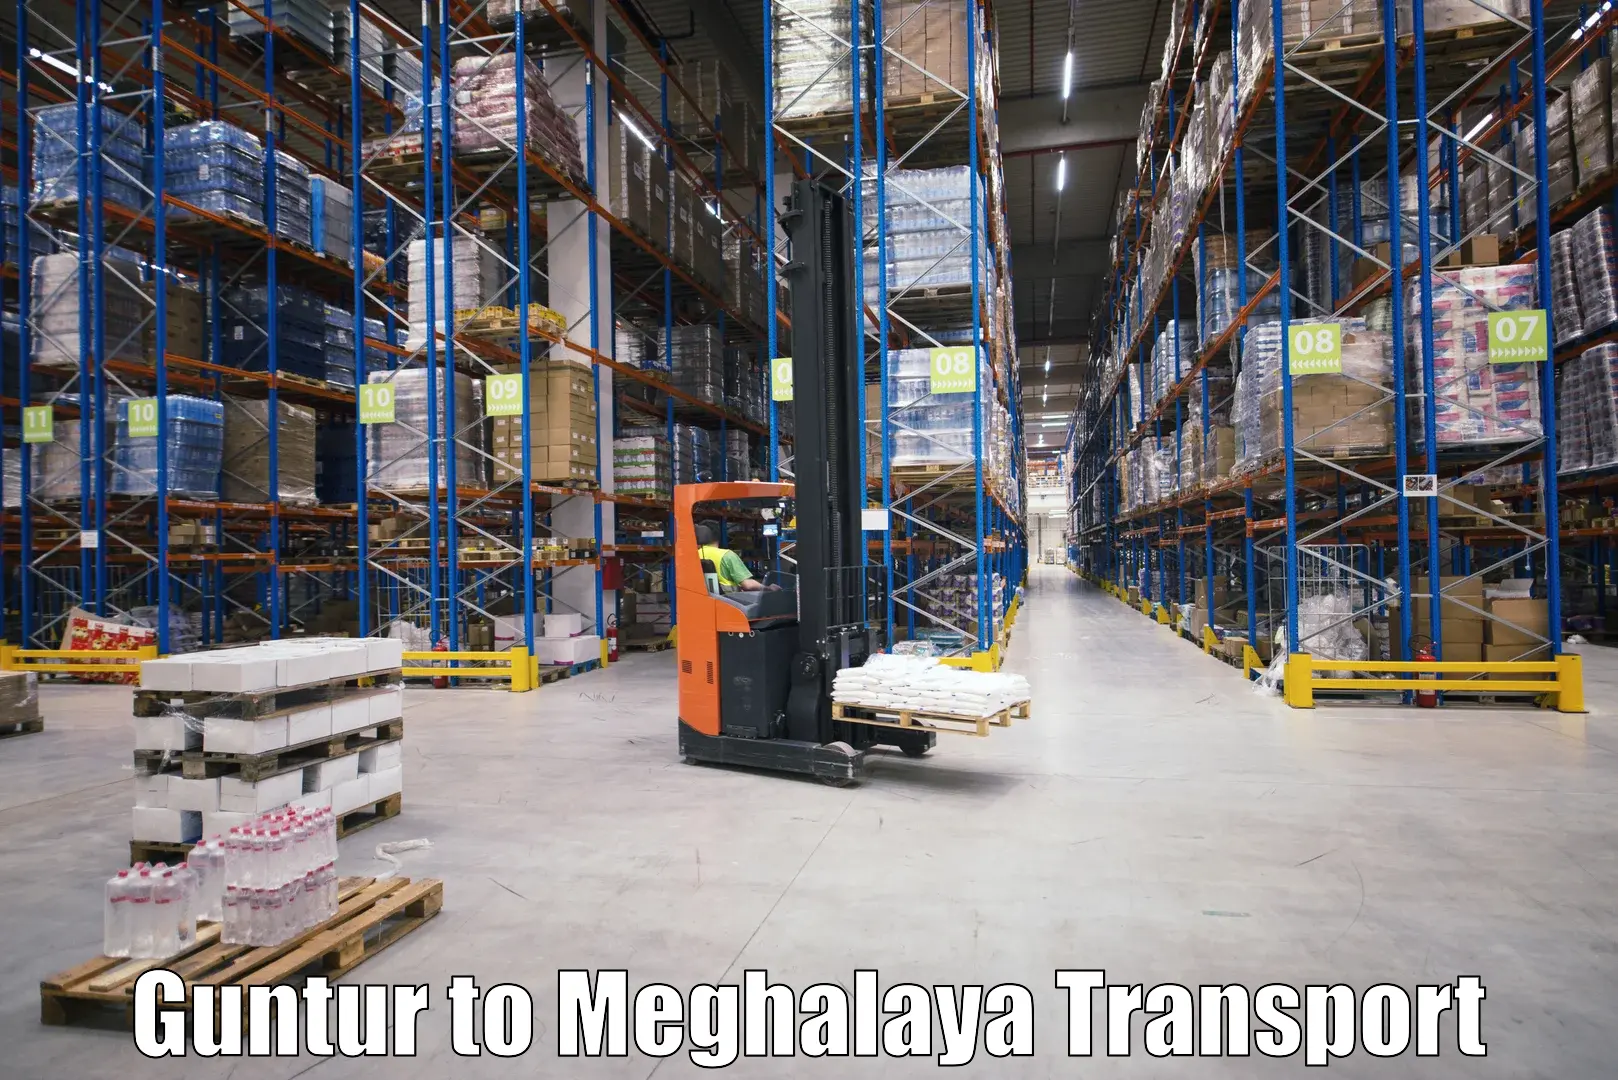 Furniture transport service Guntur to Phulbari